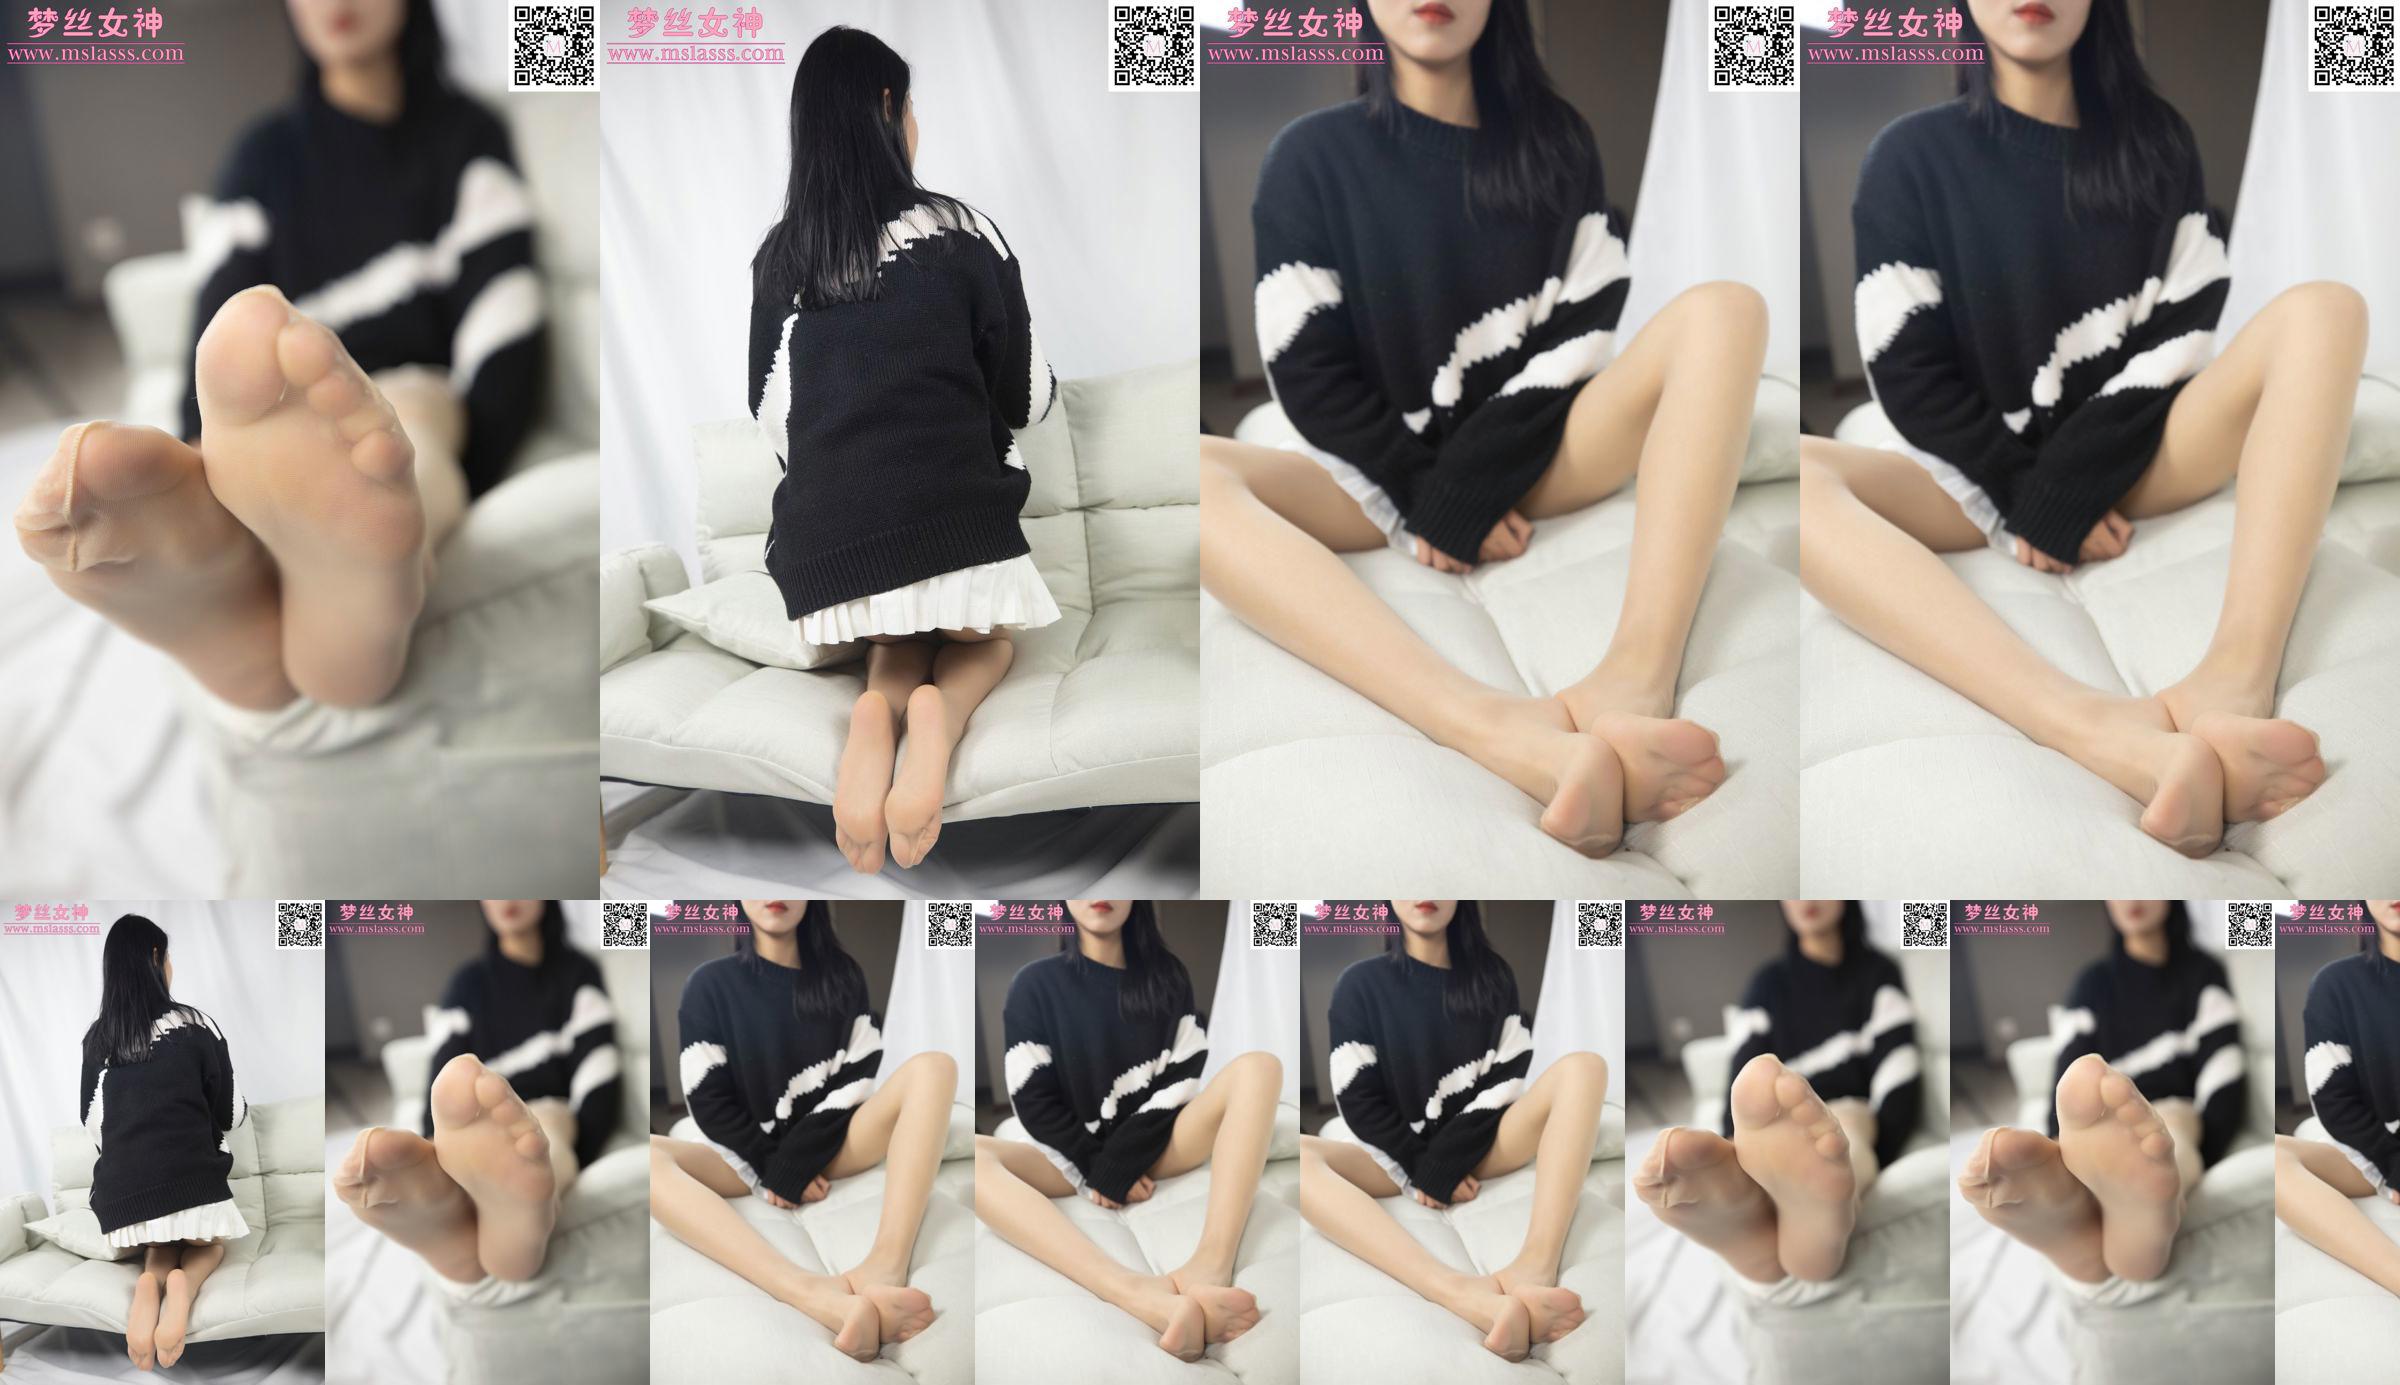 [Goddess of Dreams MSLASS] Xiaomi's trui kan haar lange benen niet stoppen No.022712 Pagina 3